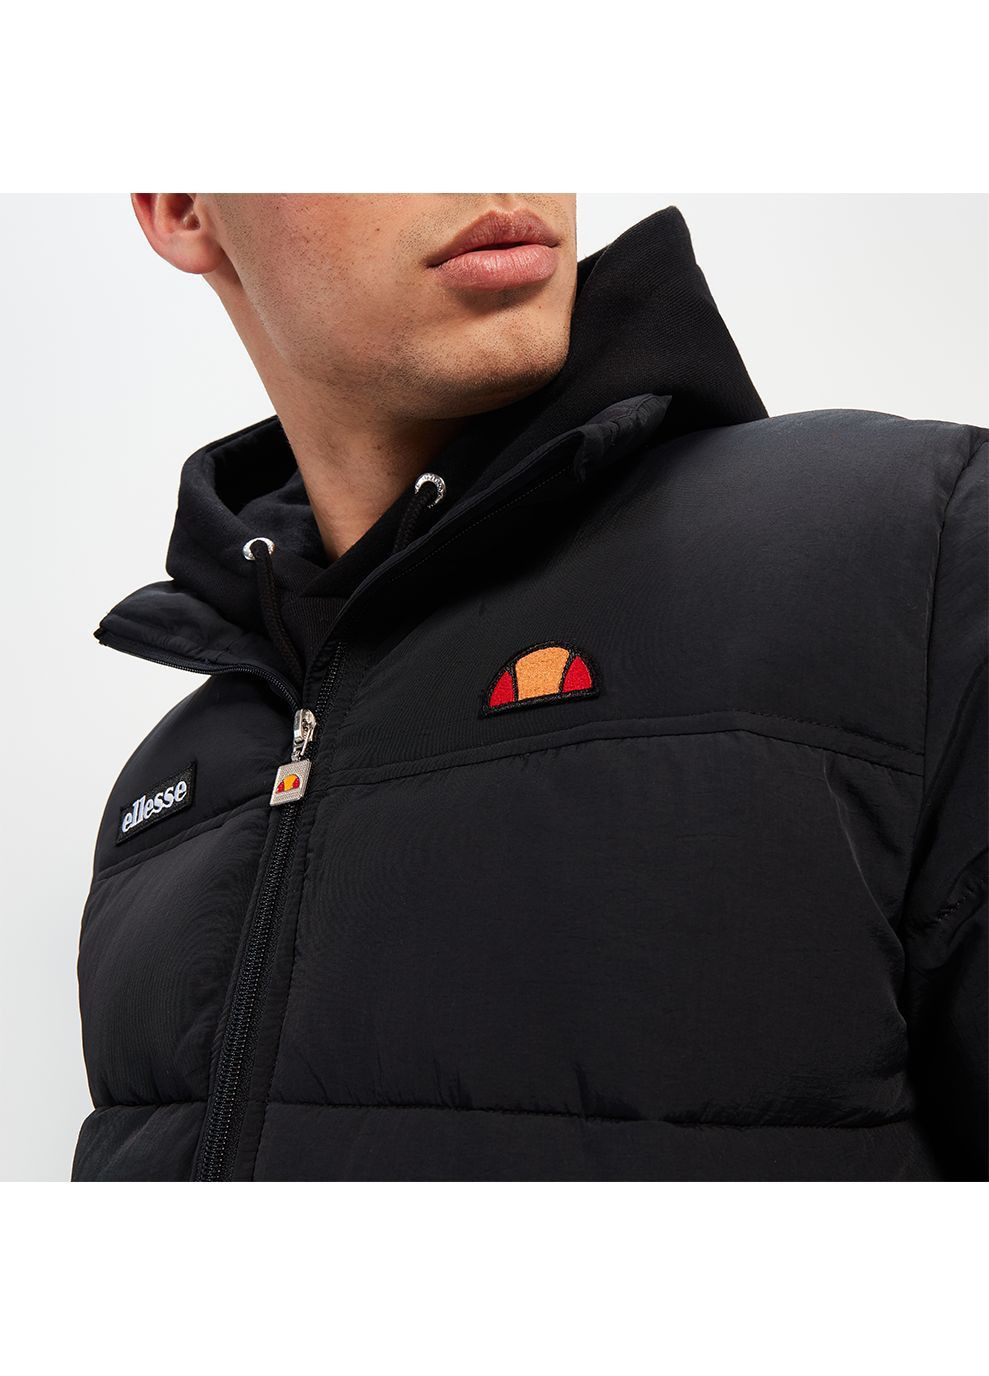 Черная зимняя мужская куртка nebula padded jacket черный Ellesse